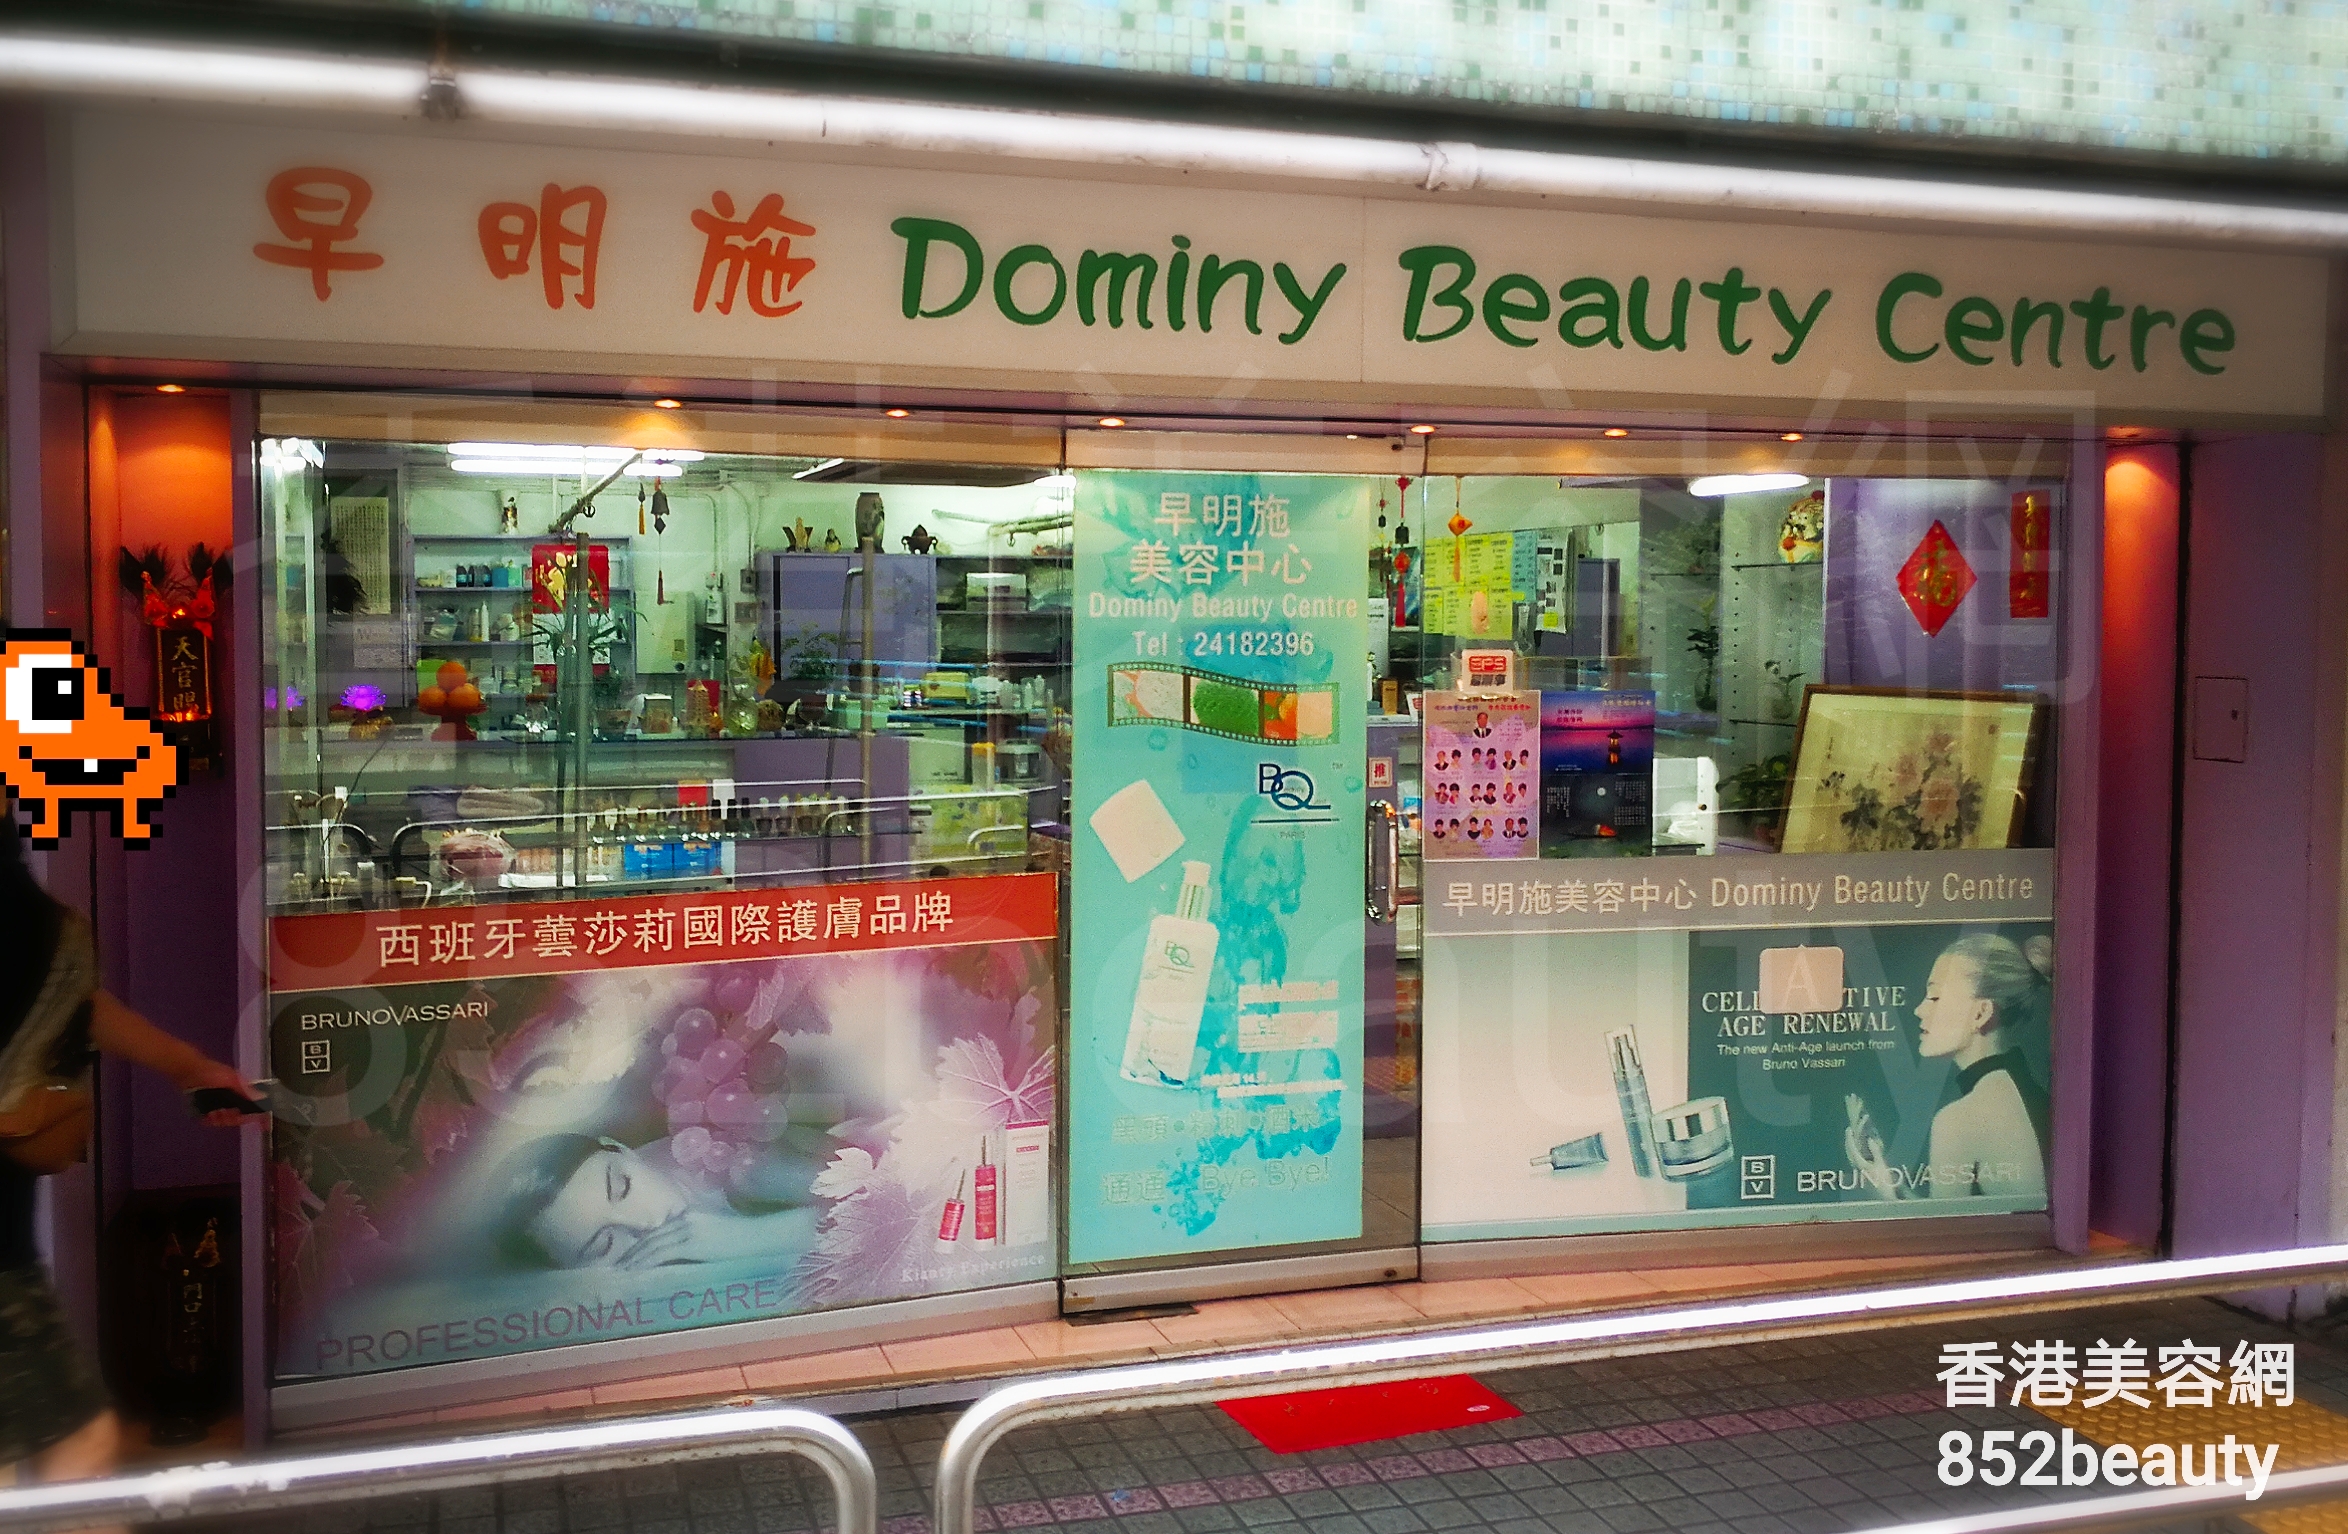 香港美容網 Hong Kong Beauty Salon 美容院 / 美容師: 早明施美容中心 Dominy Beauty Centre